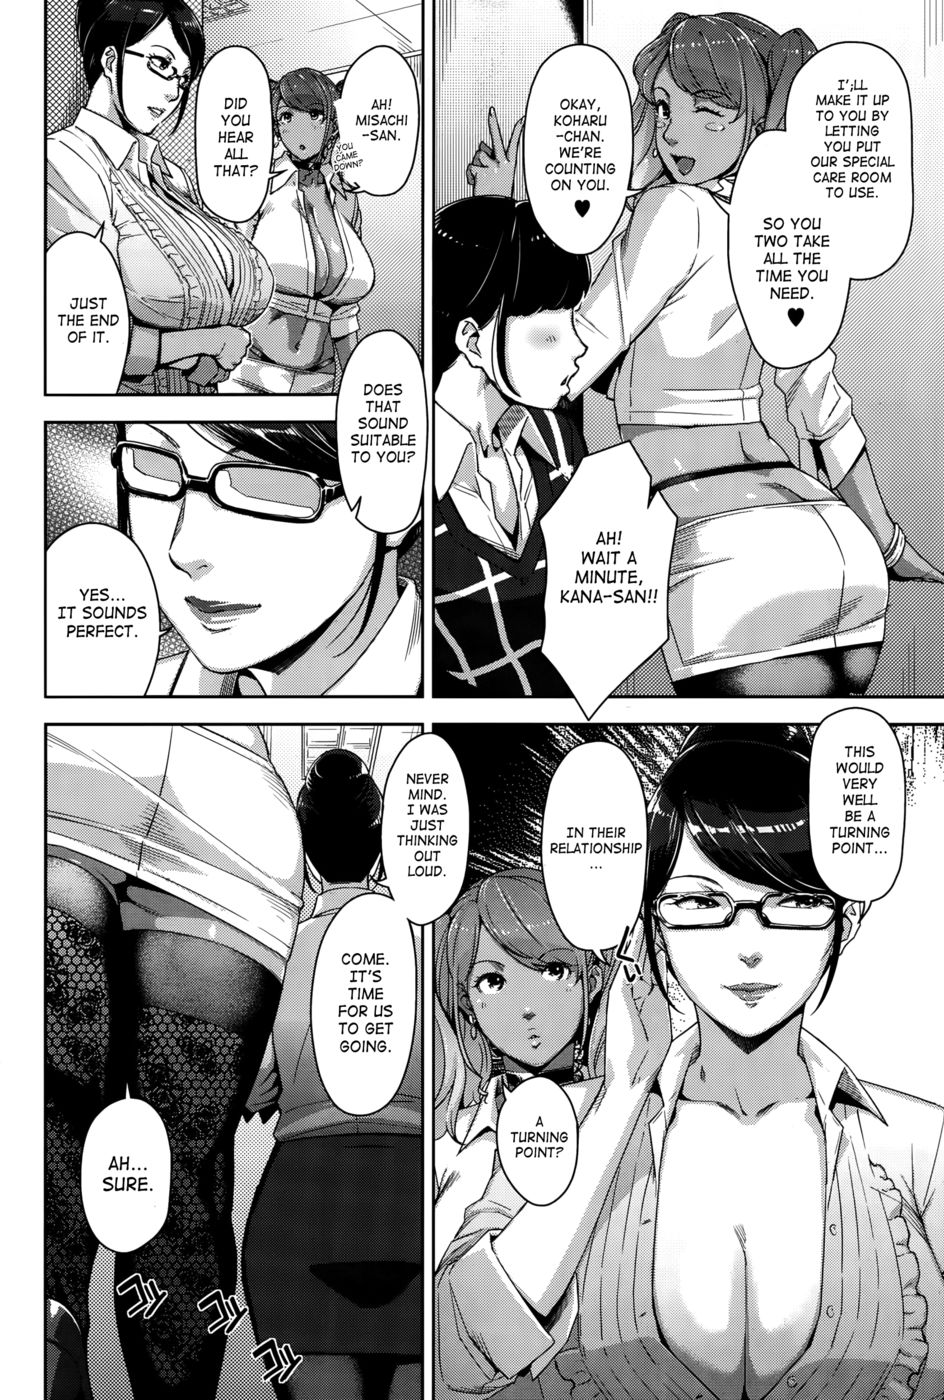 Hentai Manga Comic-My Care Lady-Chapter 3-2